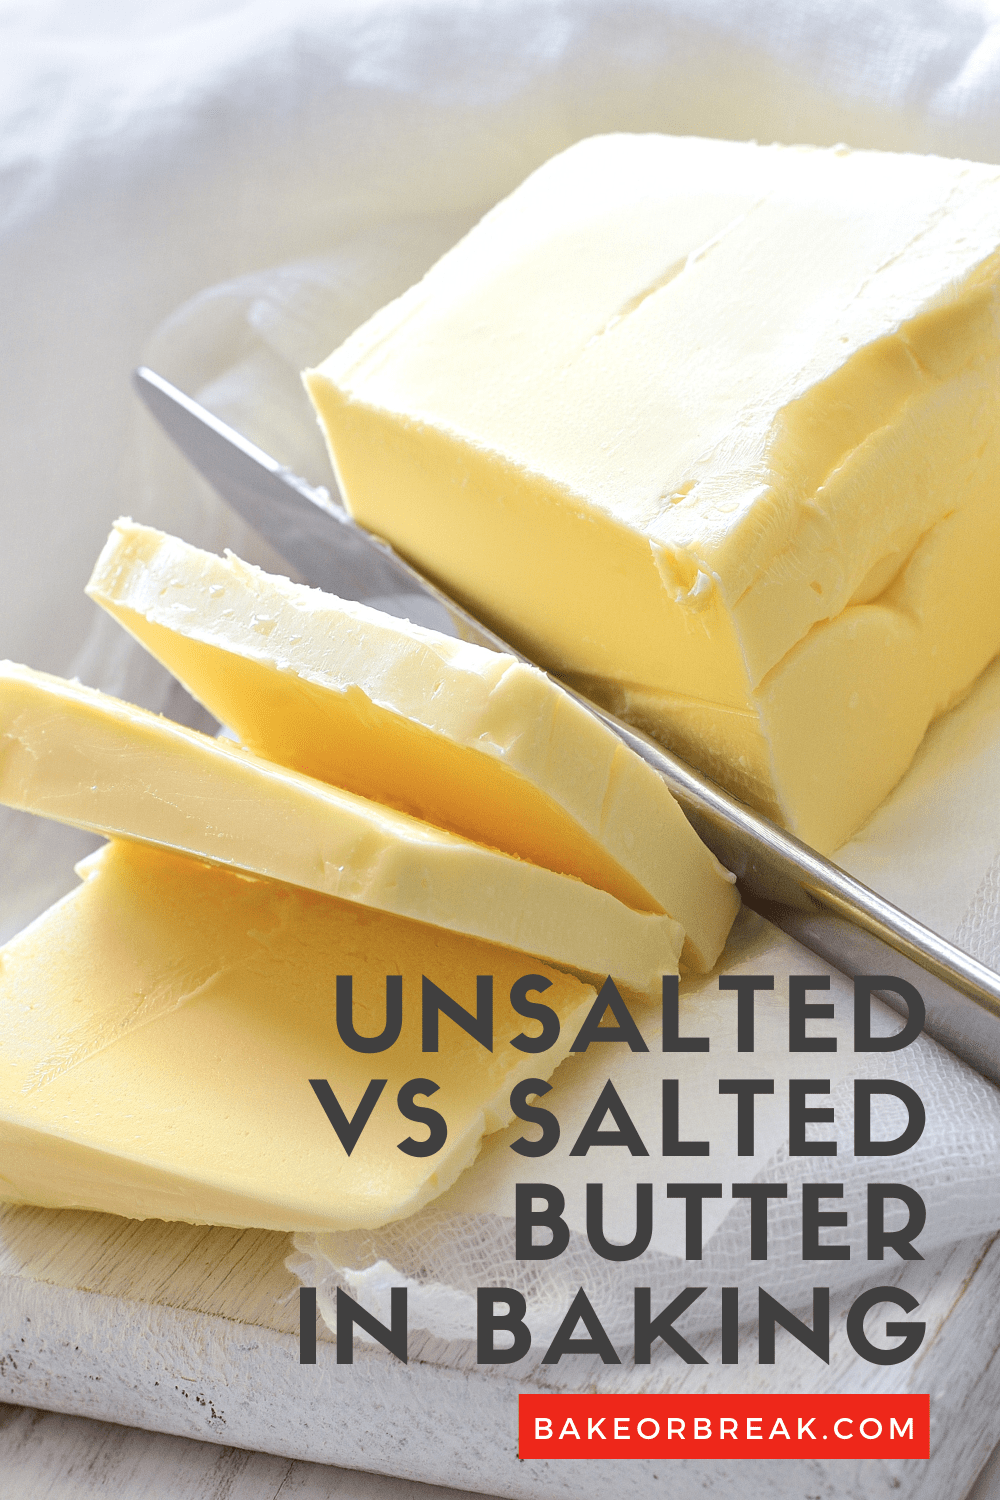 Unsalted vs Salted Butter in Baking bakeorbreak.com